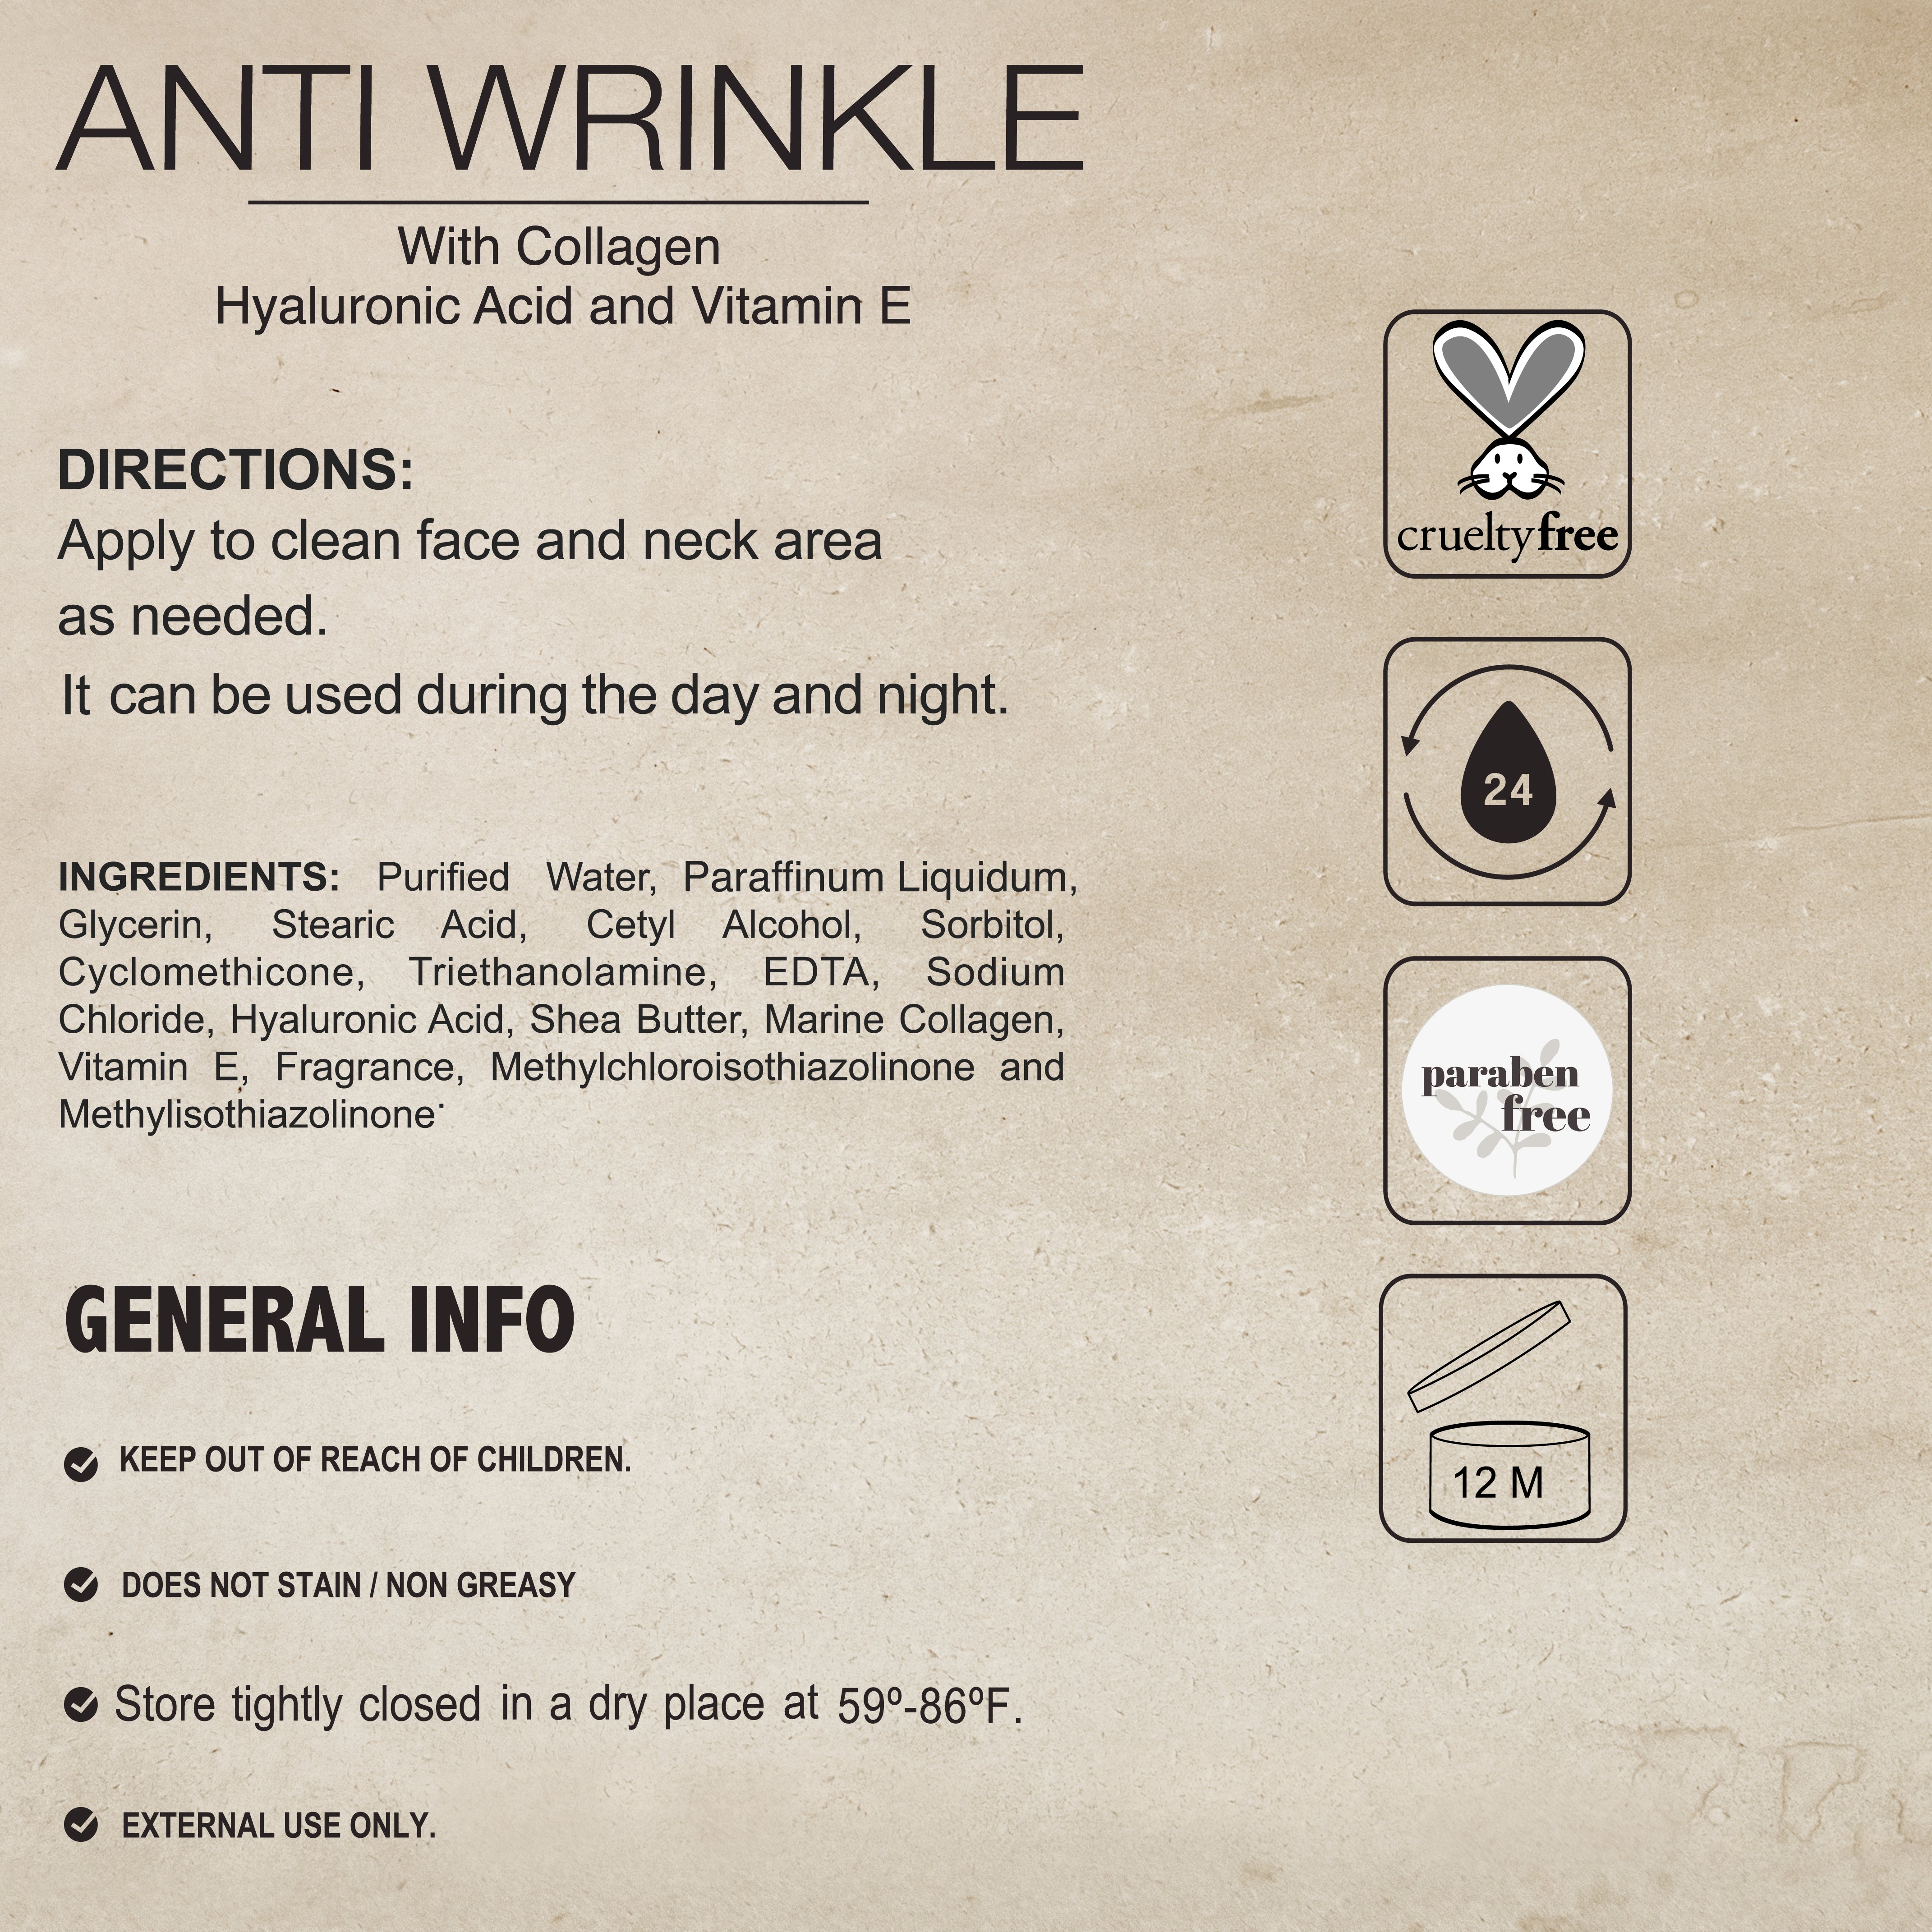 Anti-Wrinkle Cream